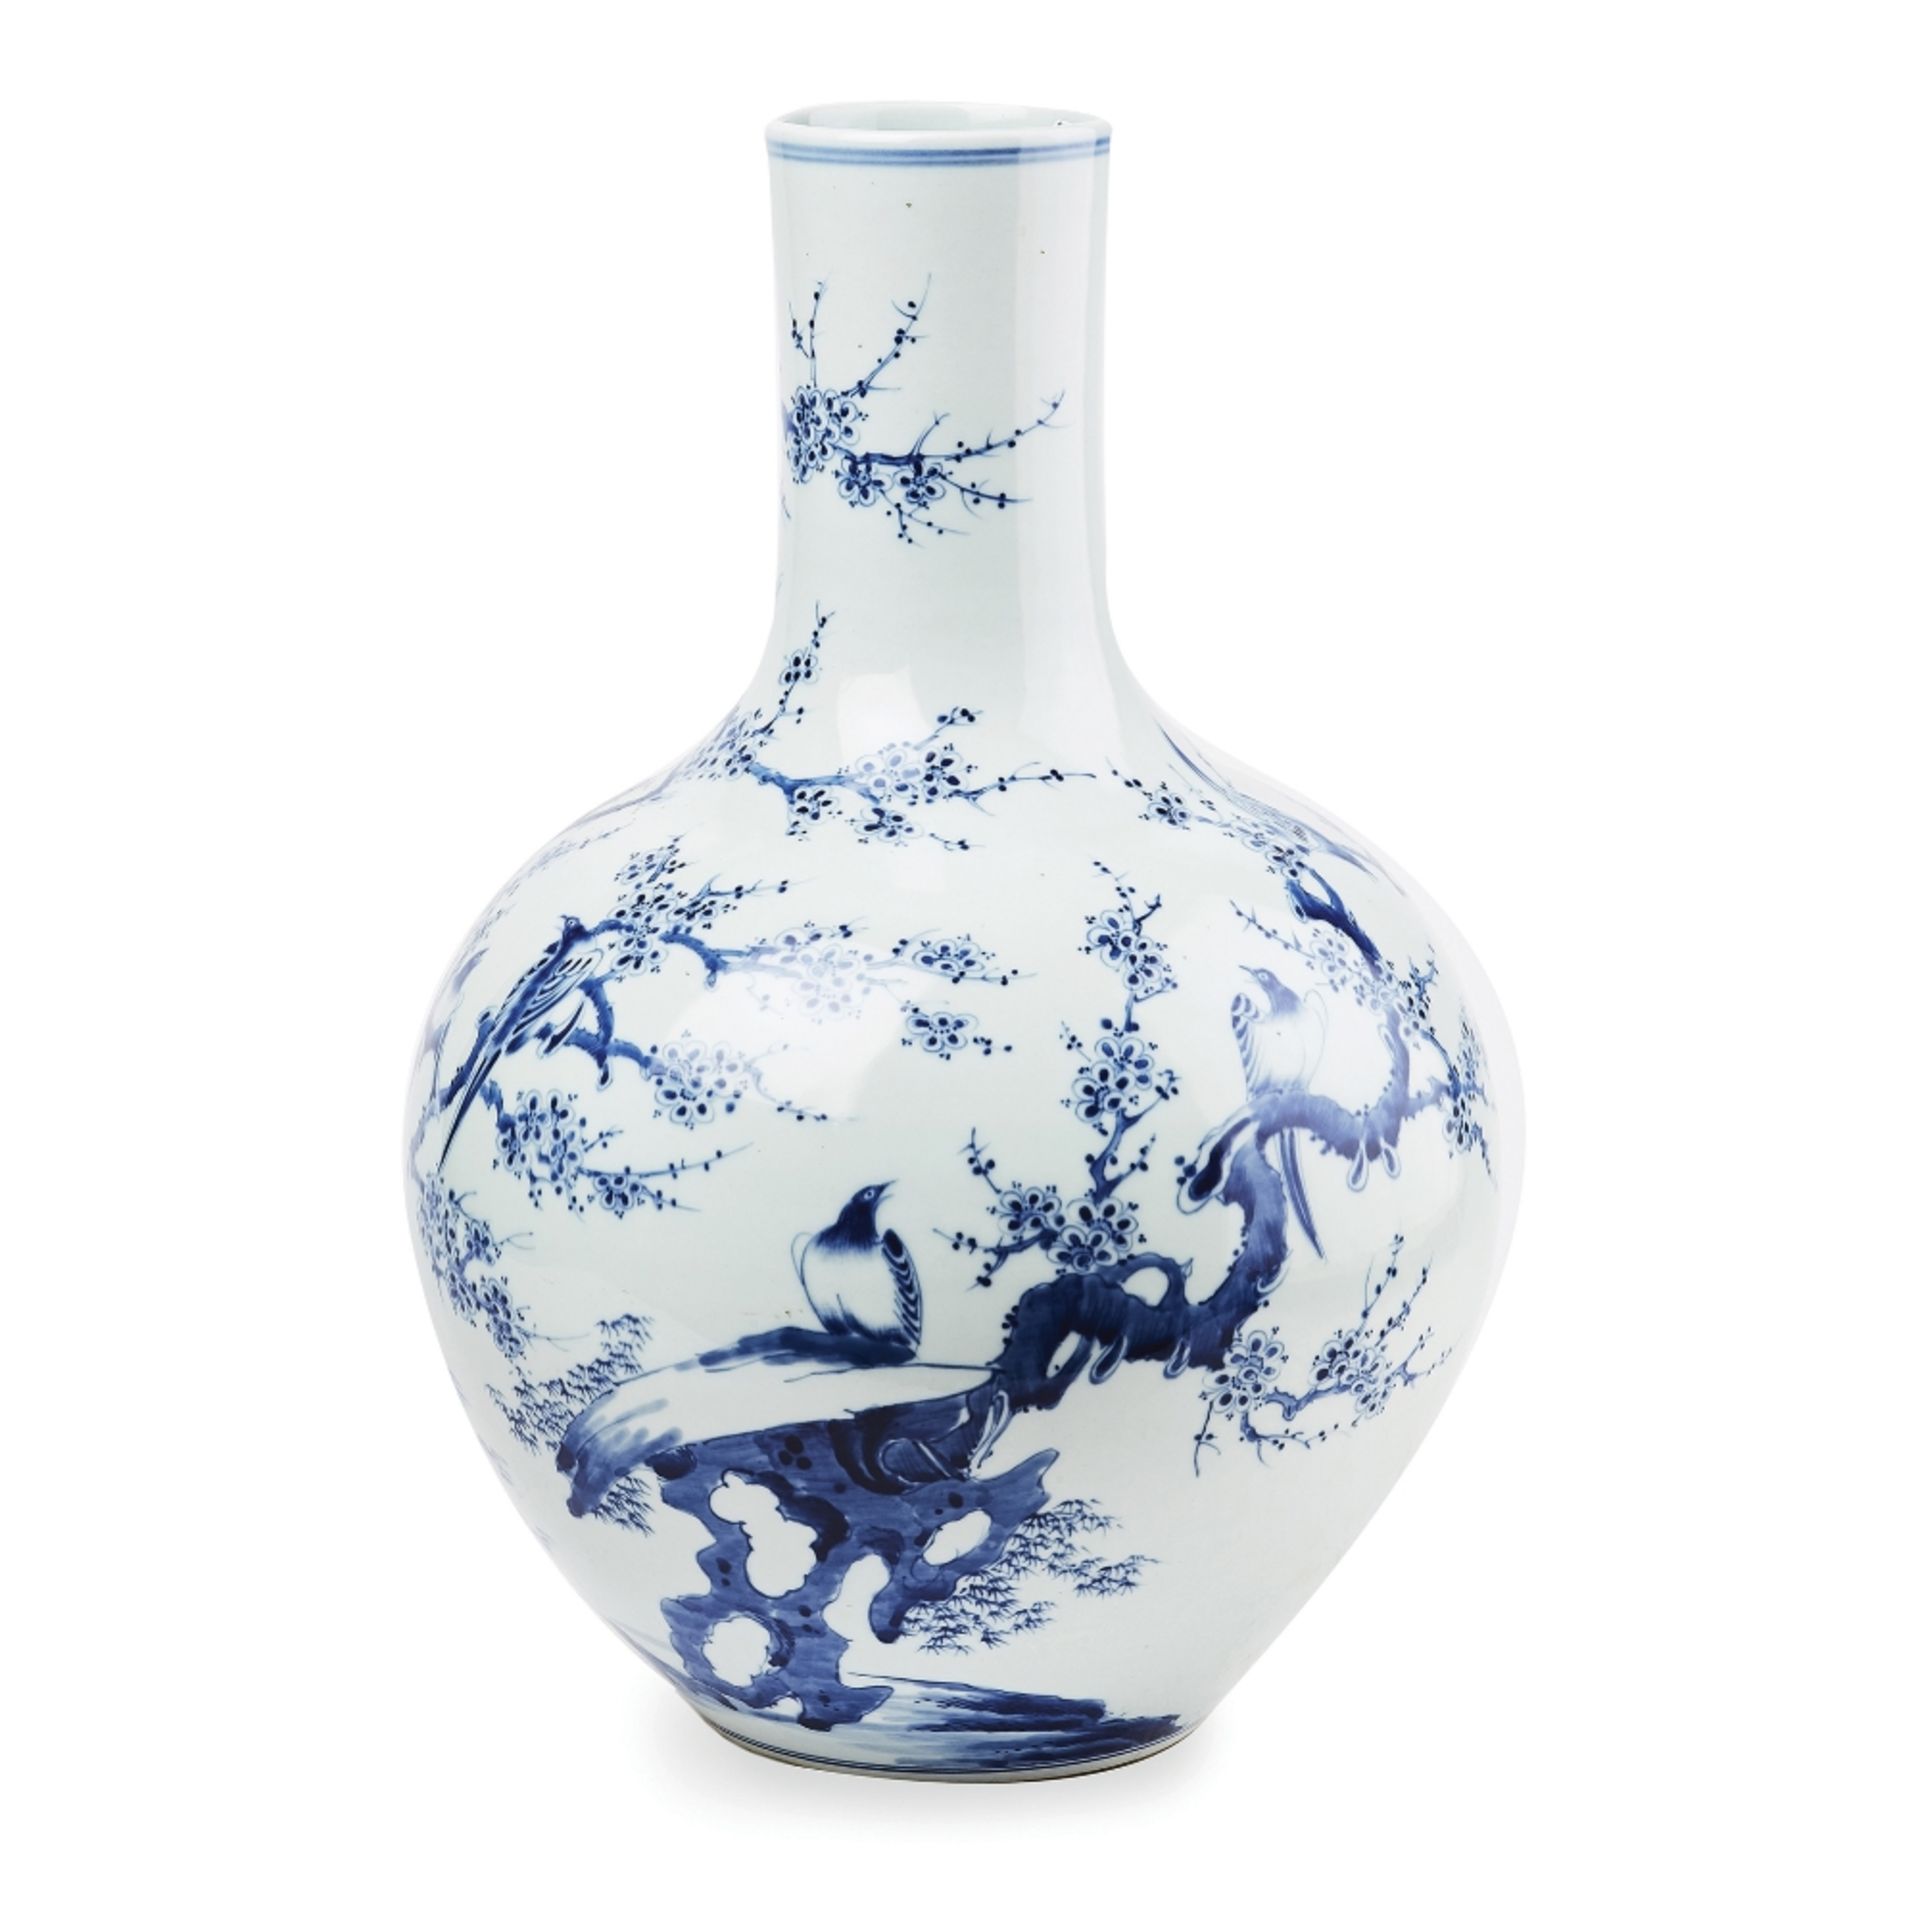 Jarrón en porcelana china azul y blanca.